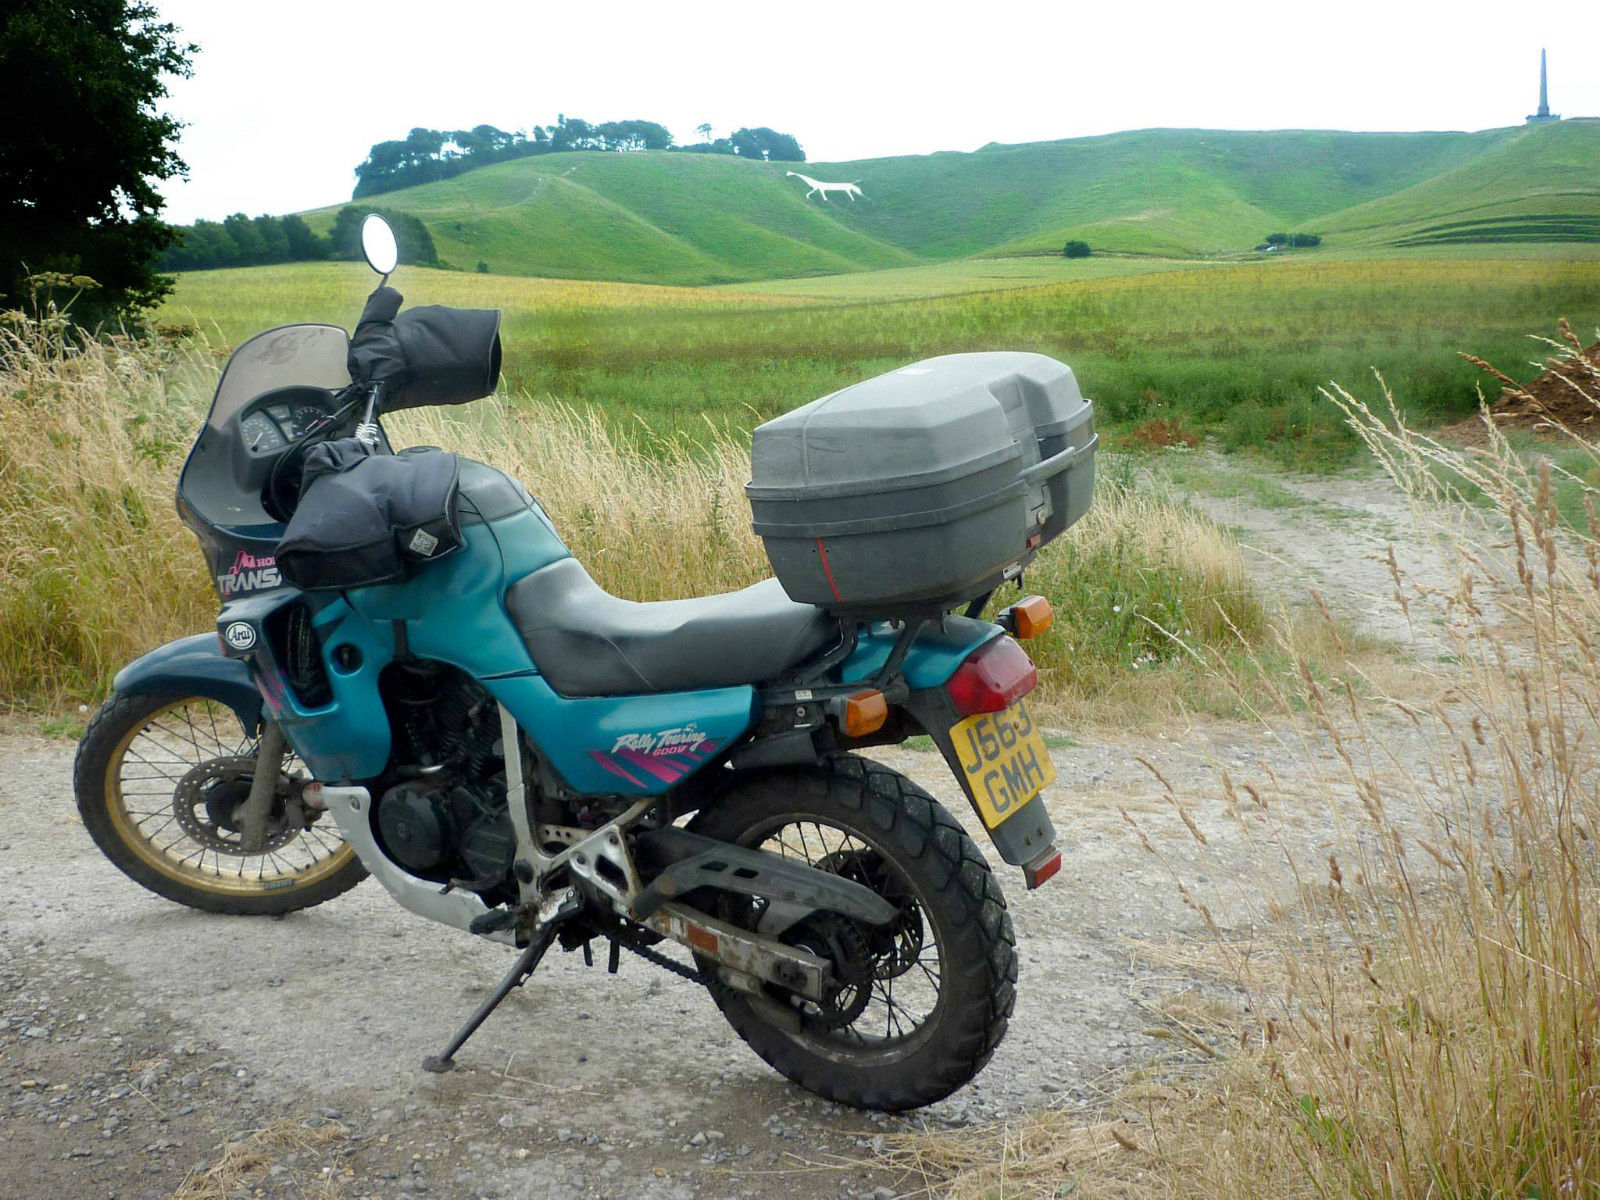 Мотоцикл honda xl 600 v transalp — один из лучших представителей туристических эндуро